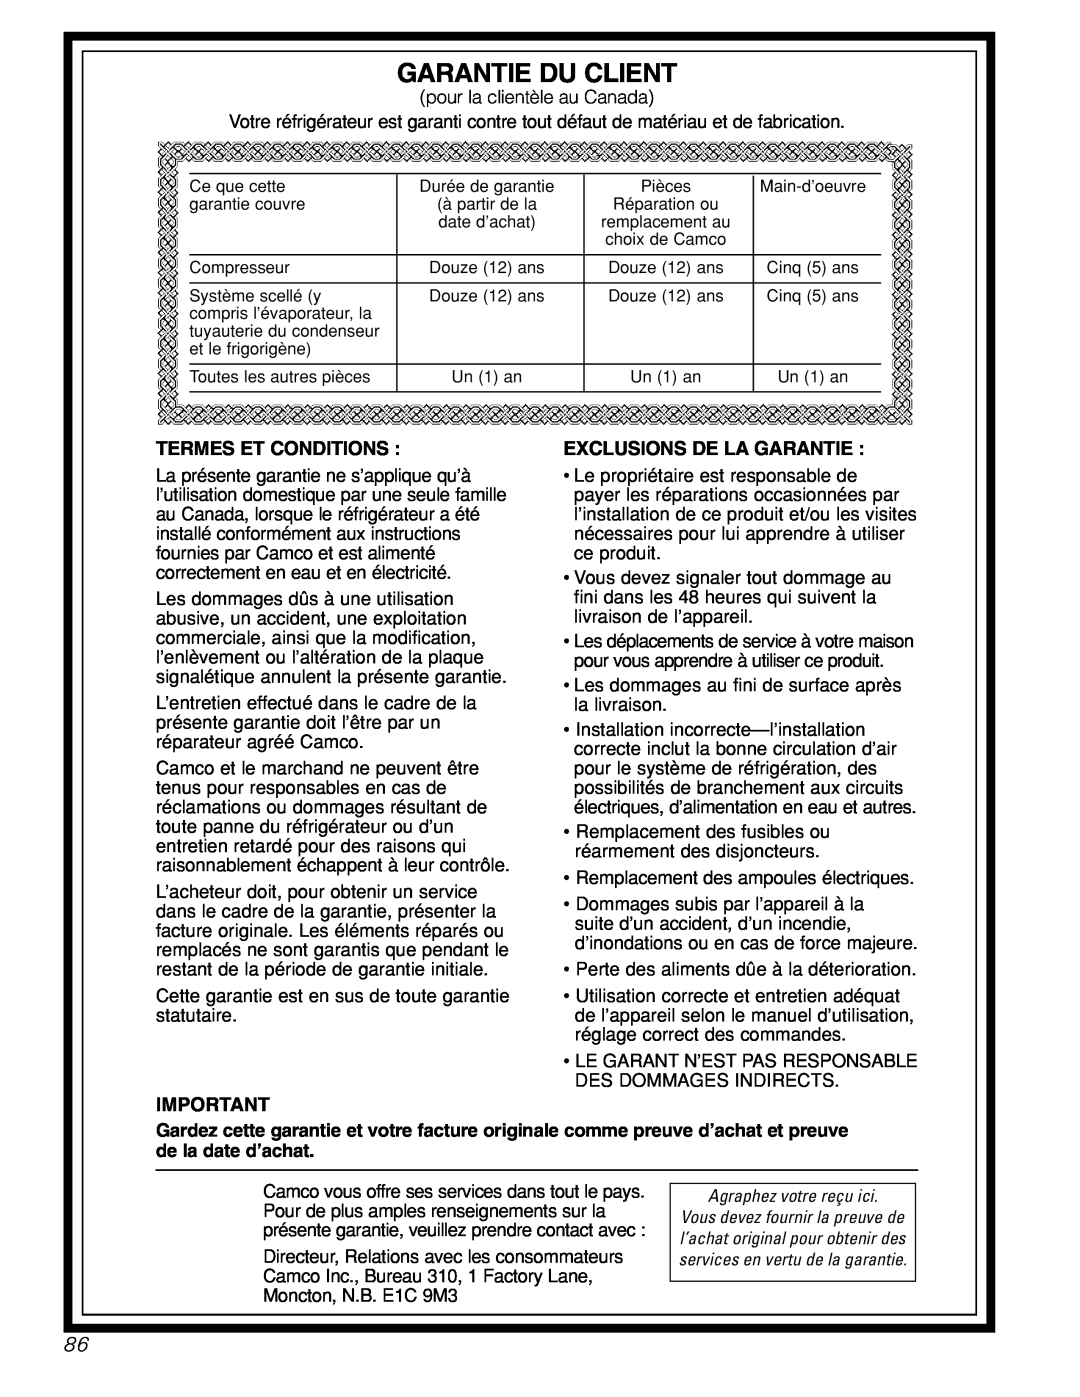 GE 42, 48 owner manual Garantie Du Client, Termes Et Conditions, Exclusions De La Garantie 